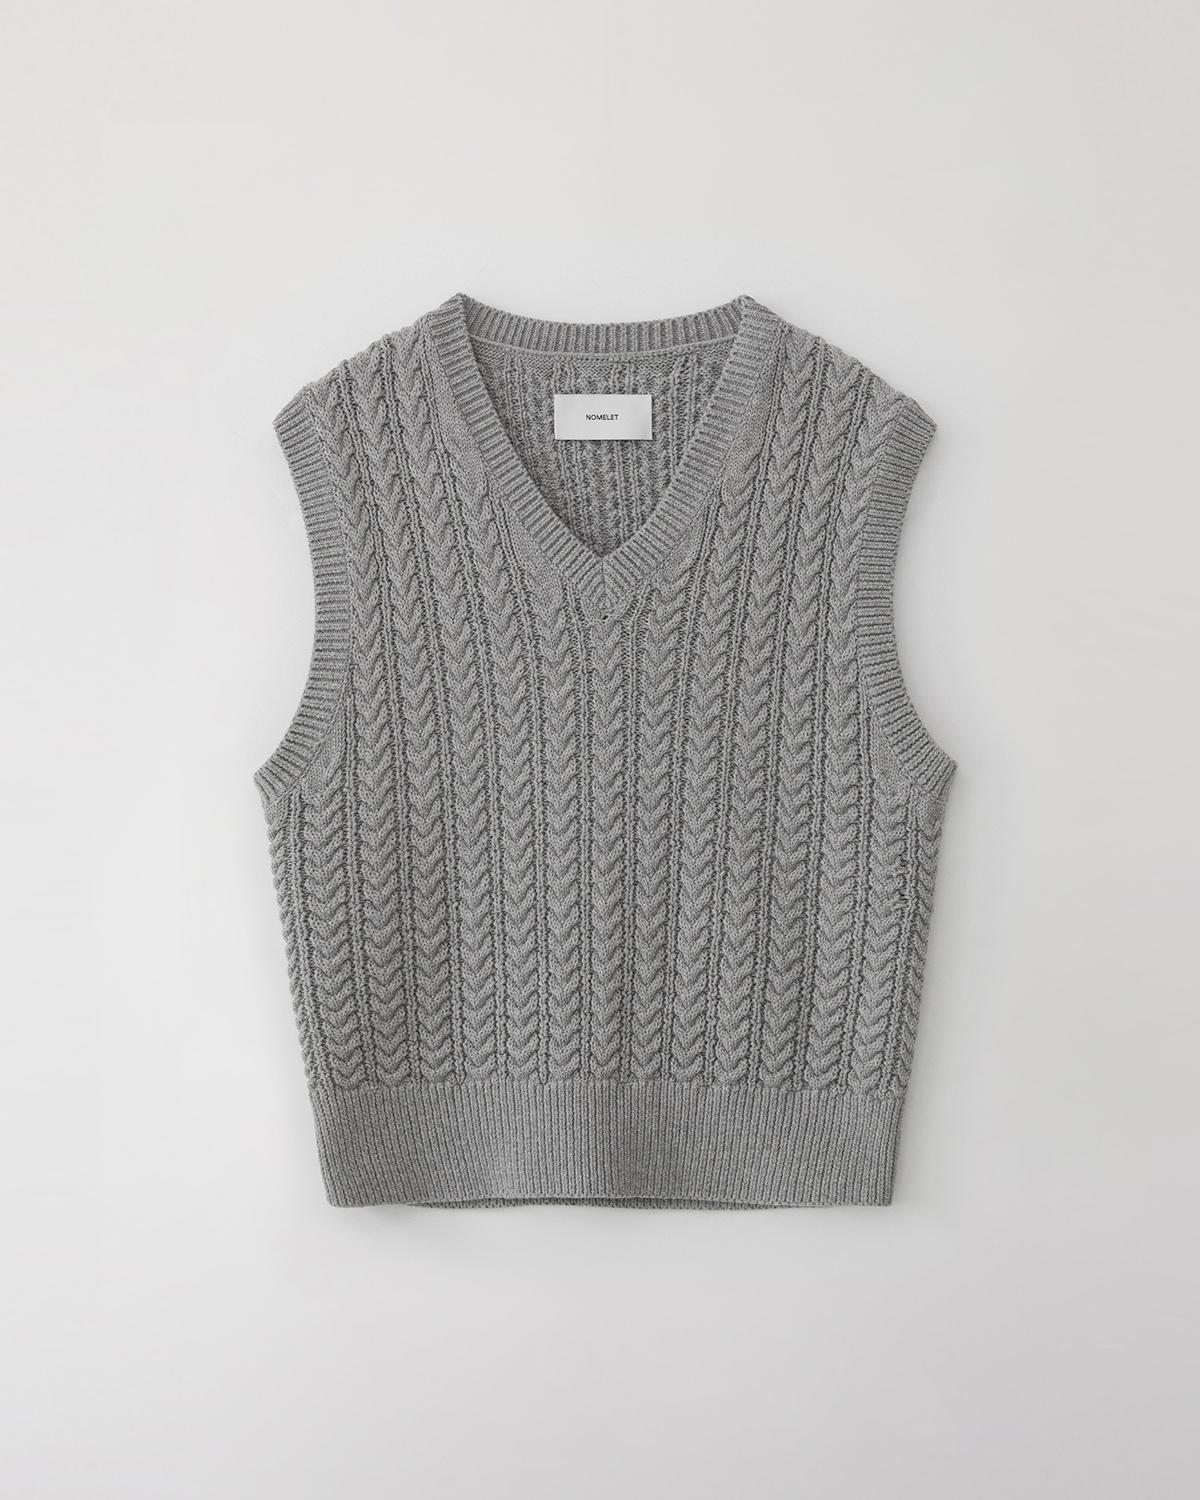 Rachel cable knit vest - melange gray